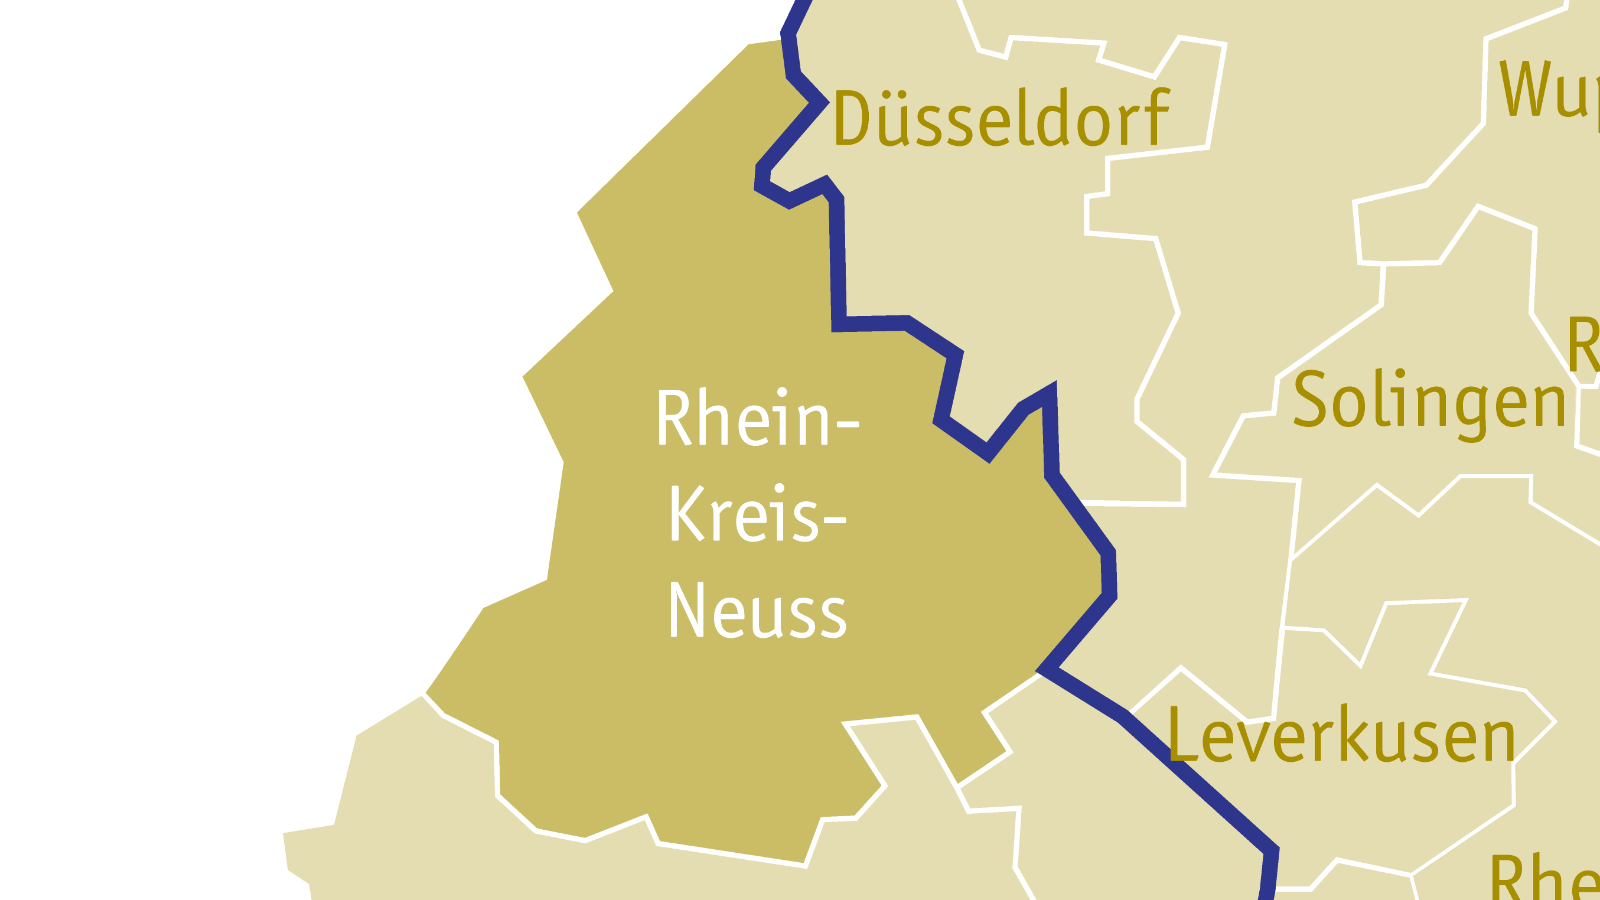 Kreisdekanat Rheinkreis Neuss